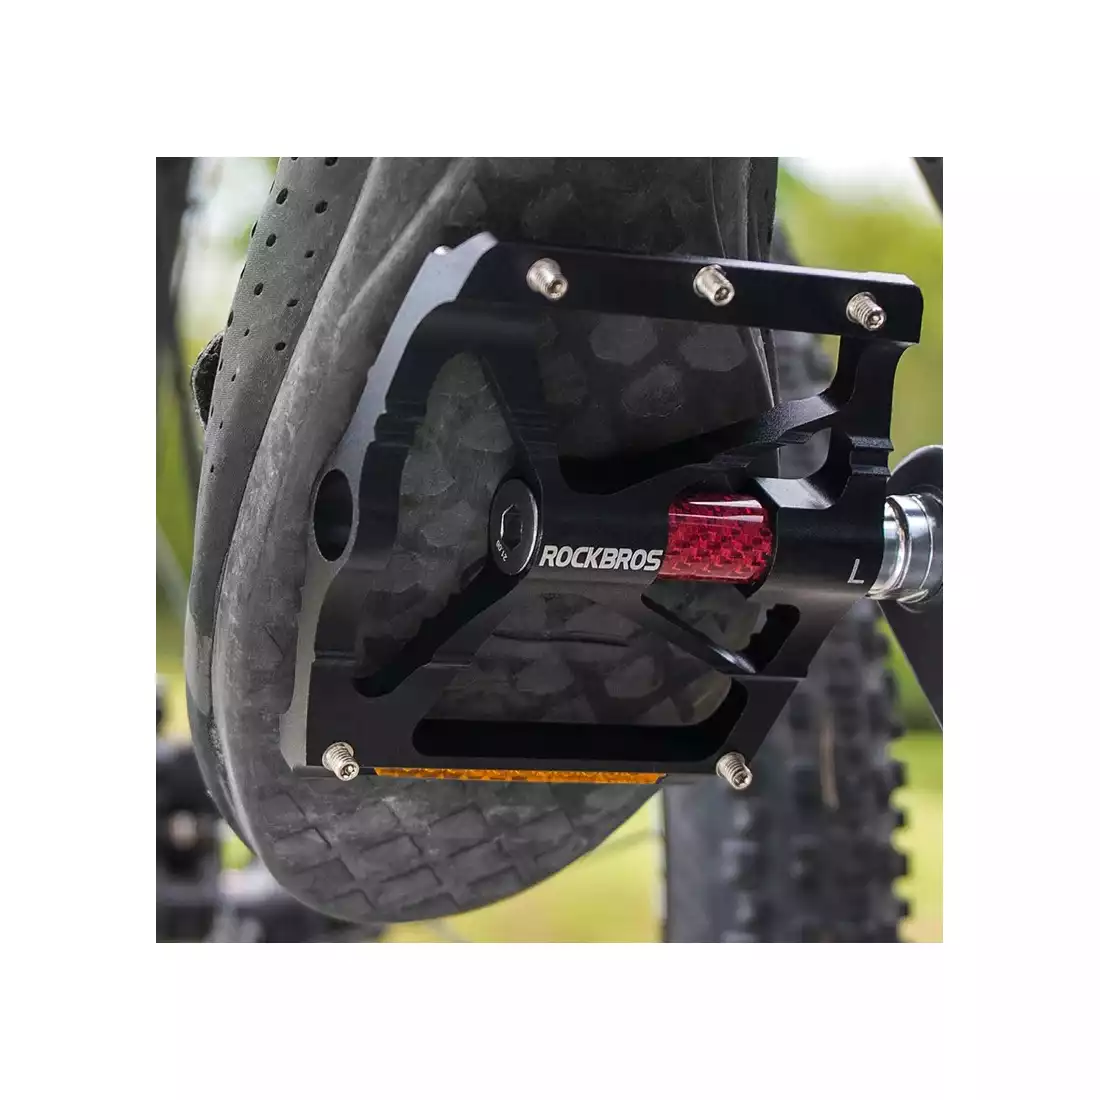 Rockbros aluminium platform pedals, black 37213072001